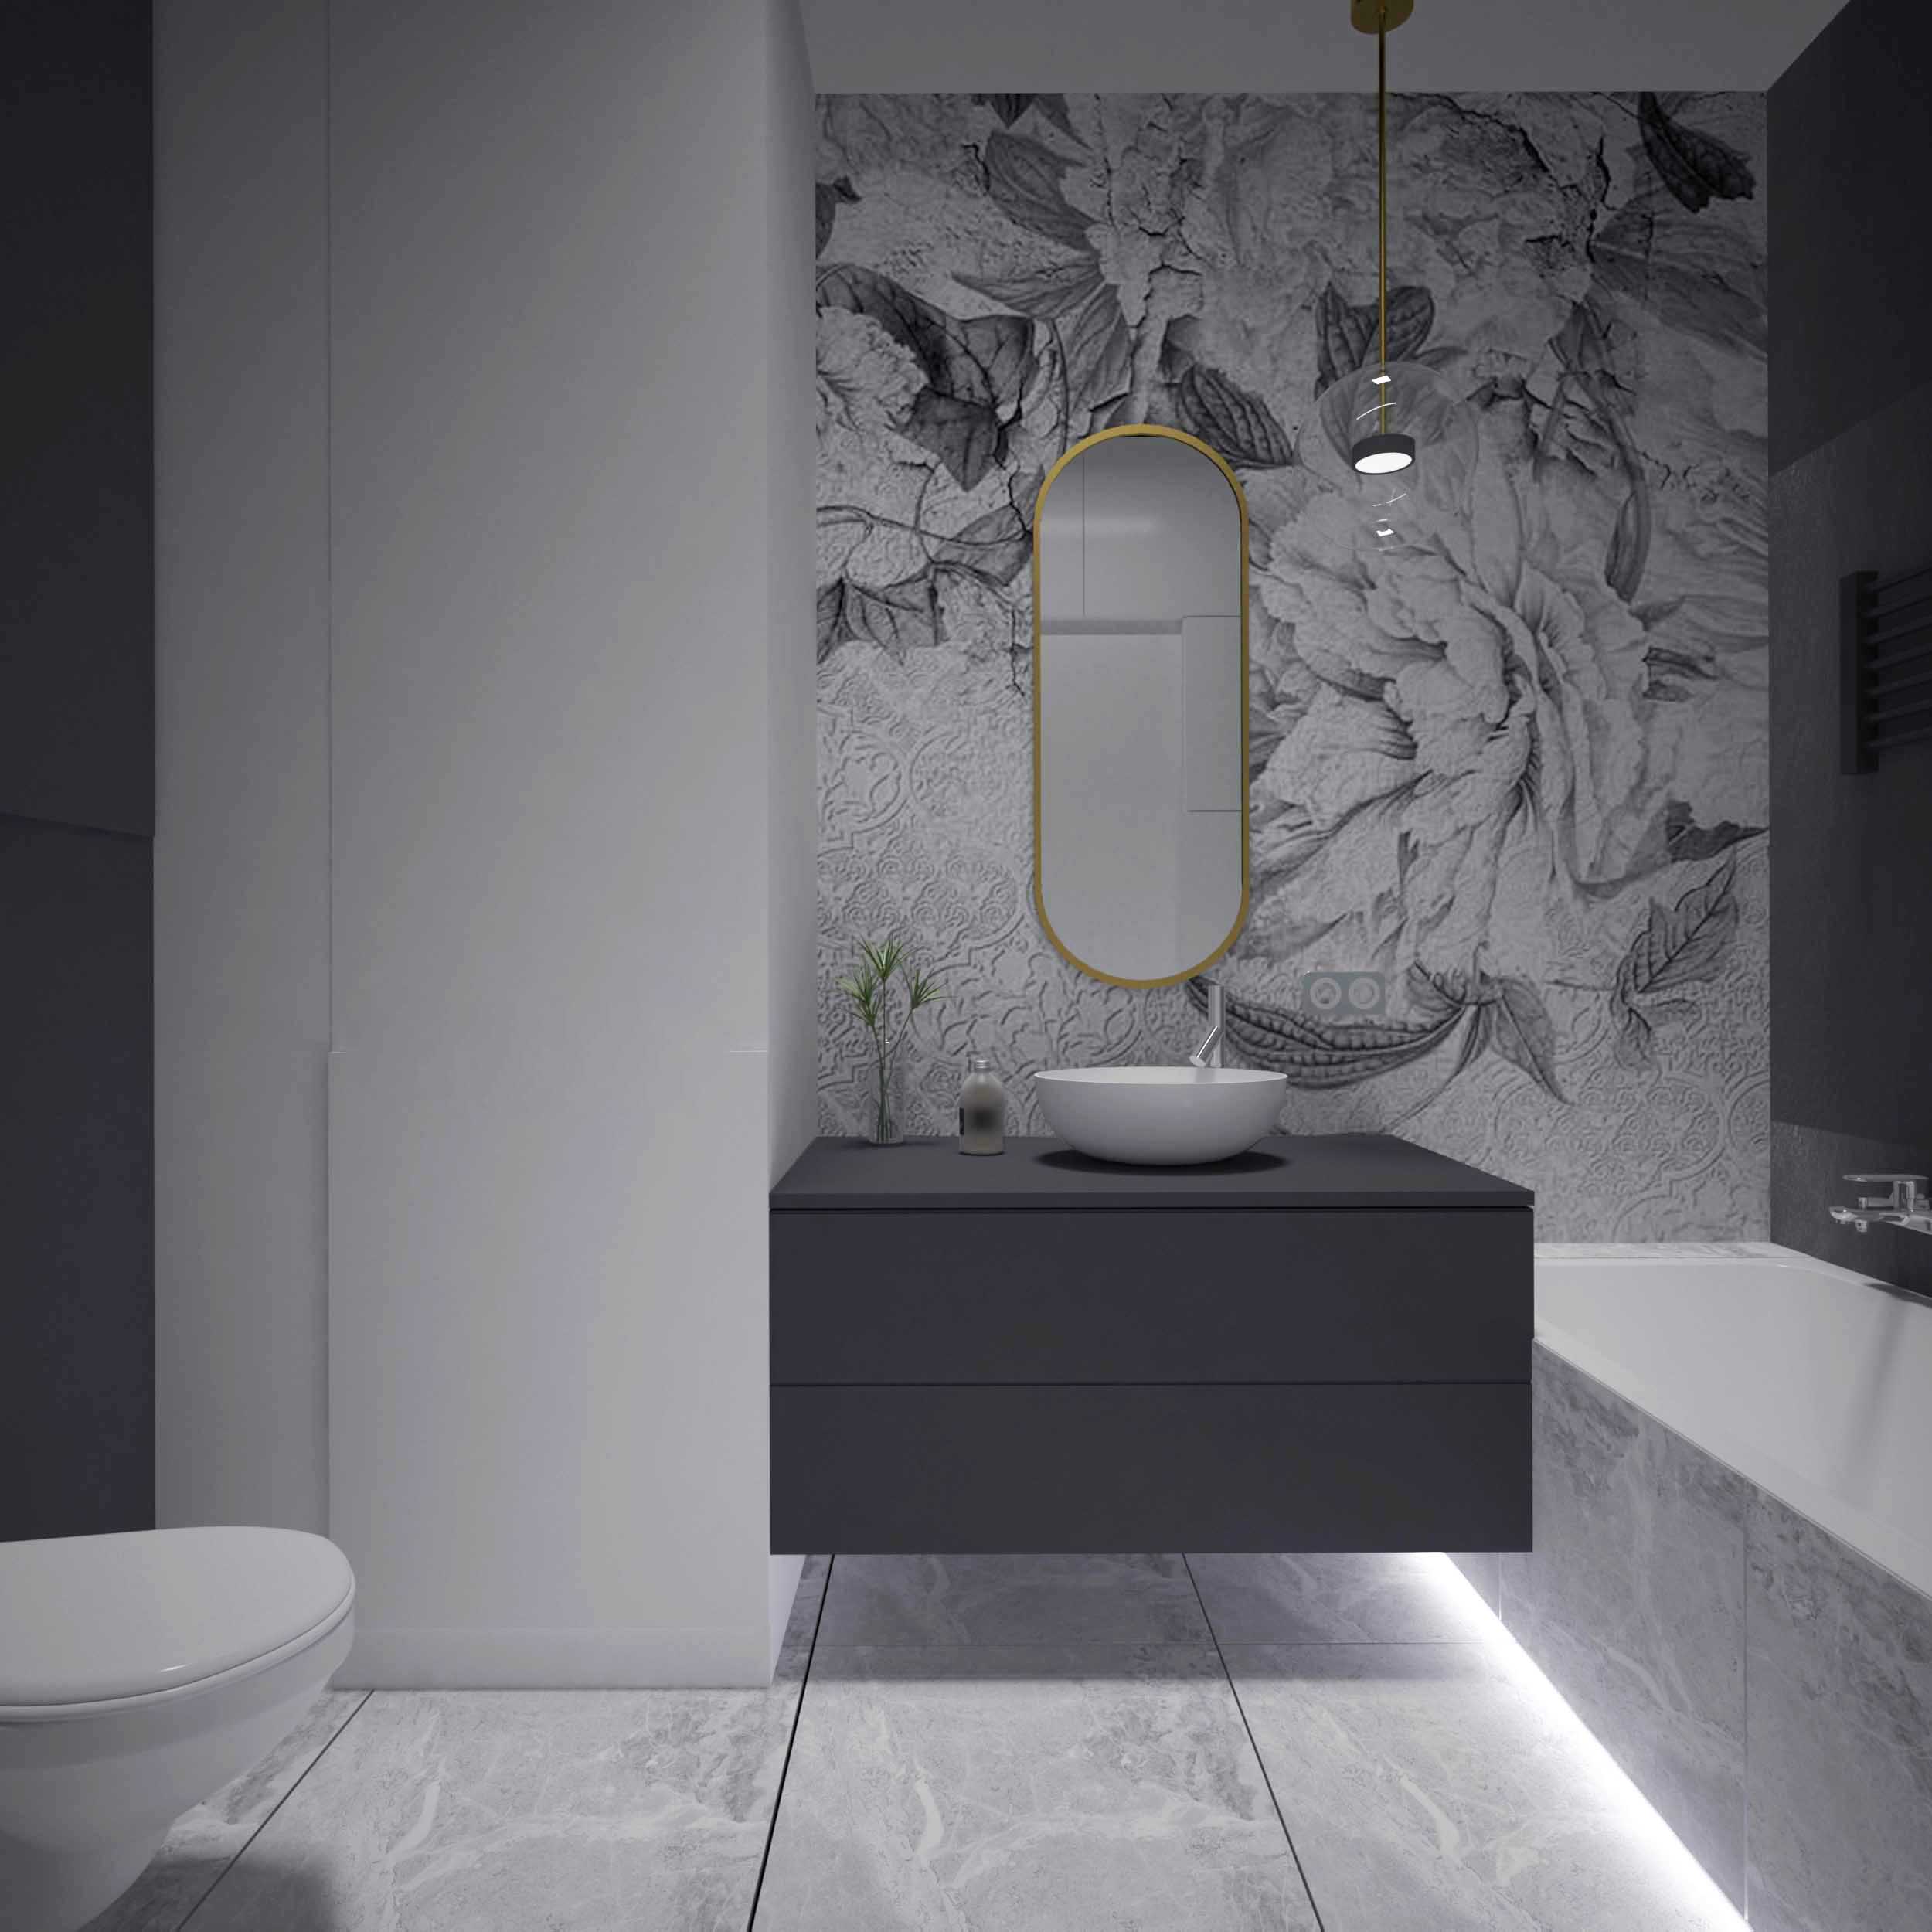 Projekt eleganckiej nowoczesnej łazienki